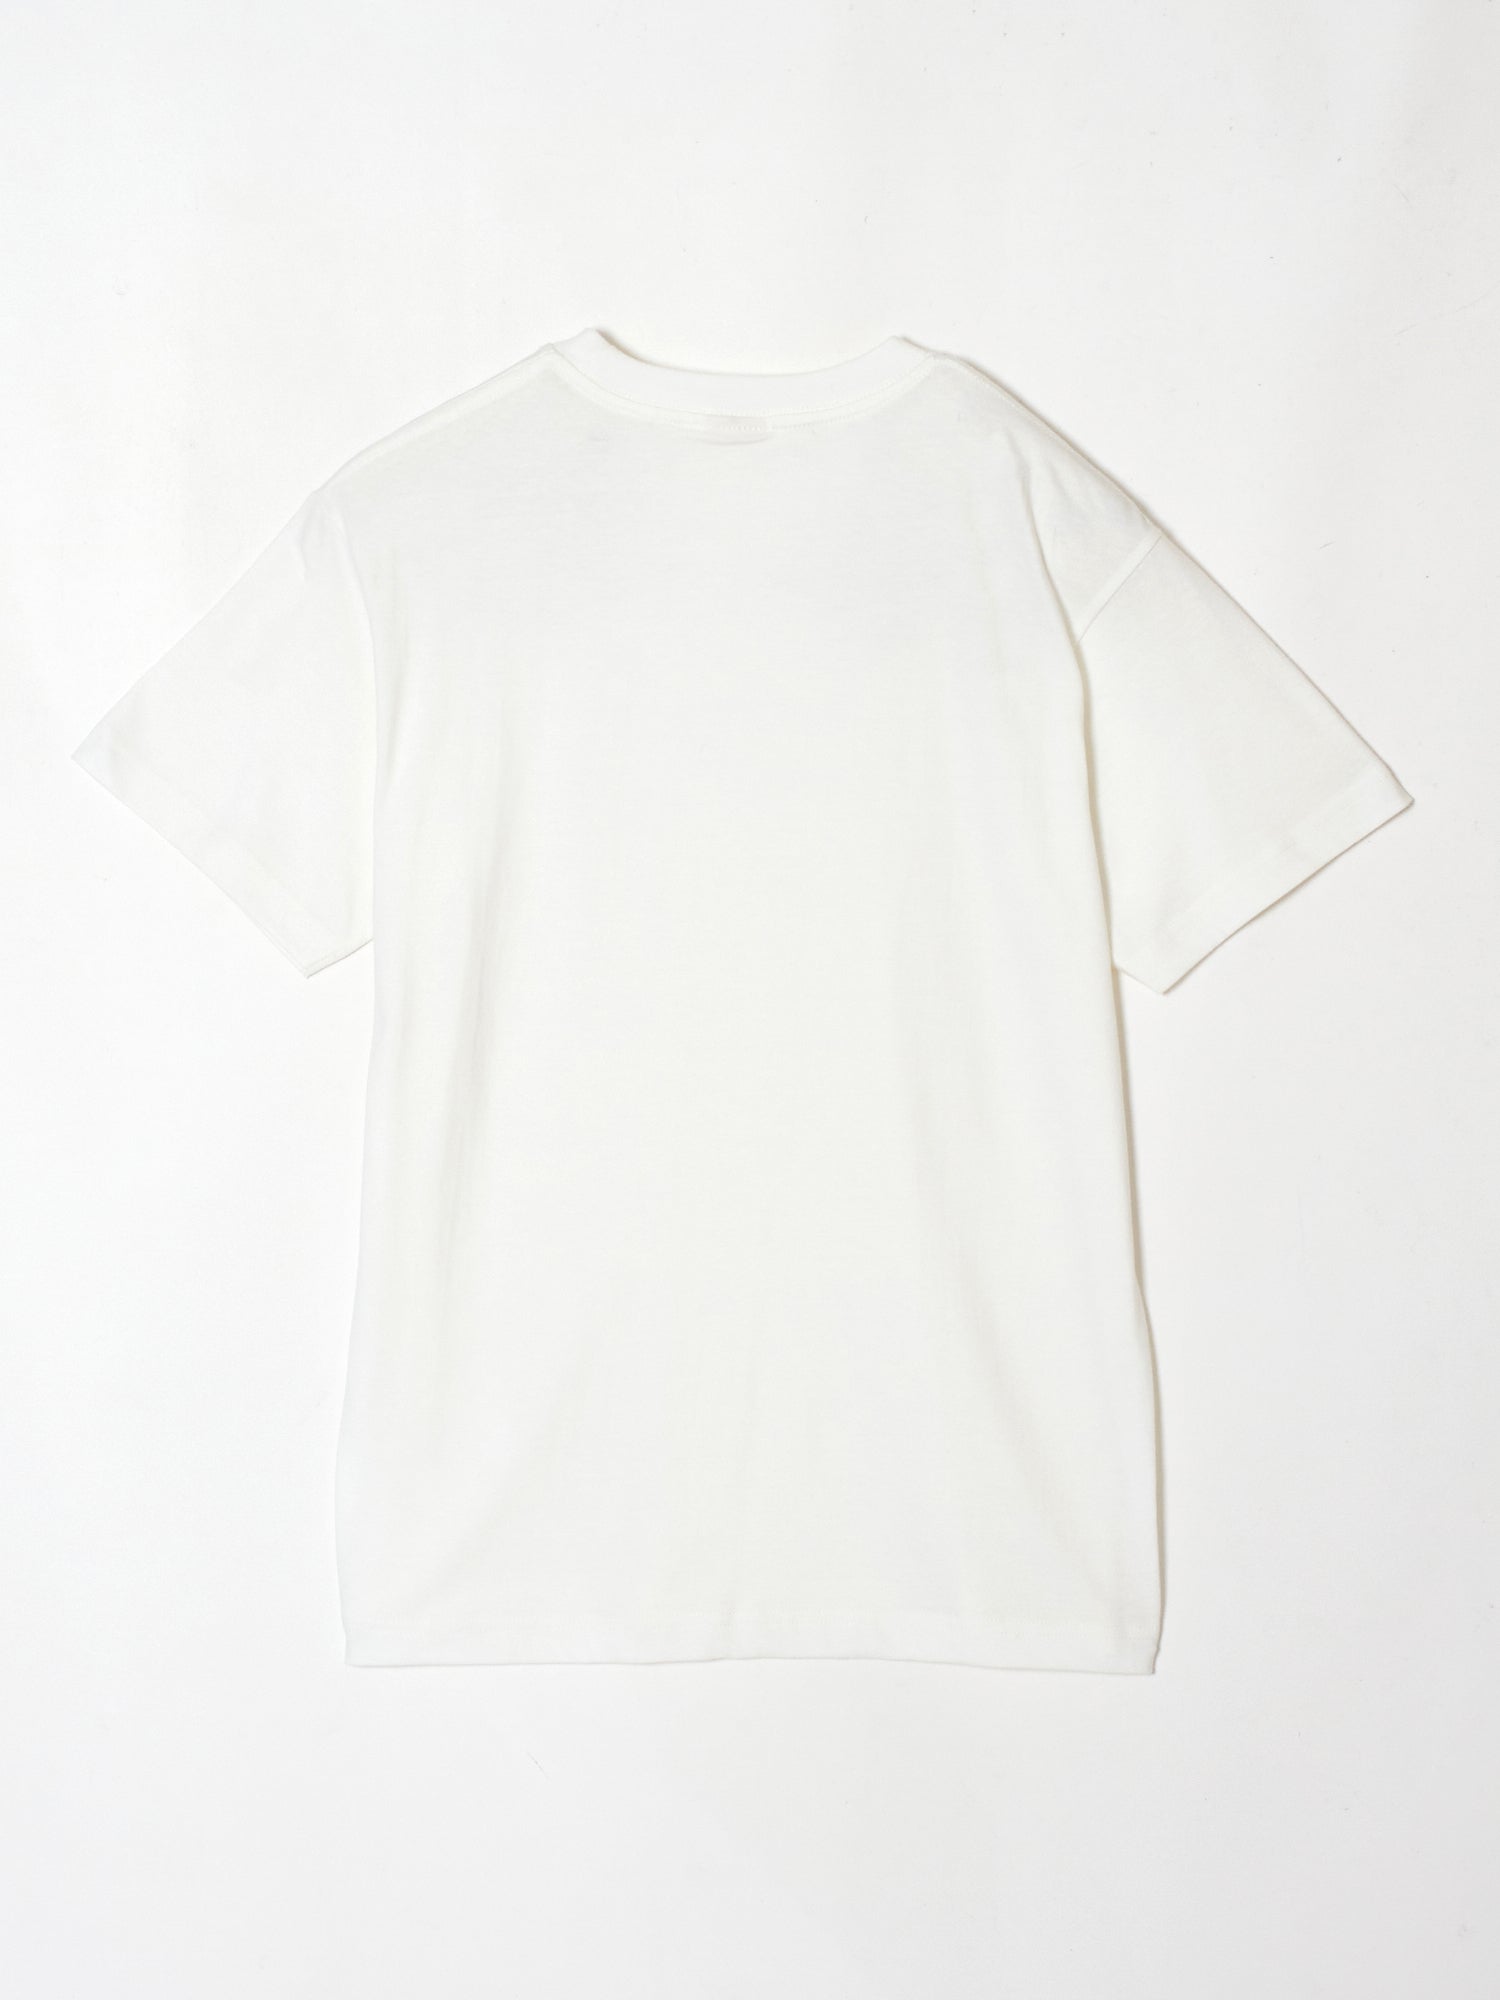 Two horse T-shirt White 01 tanakadaisukeタナカダイスケ